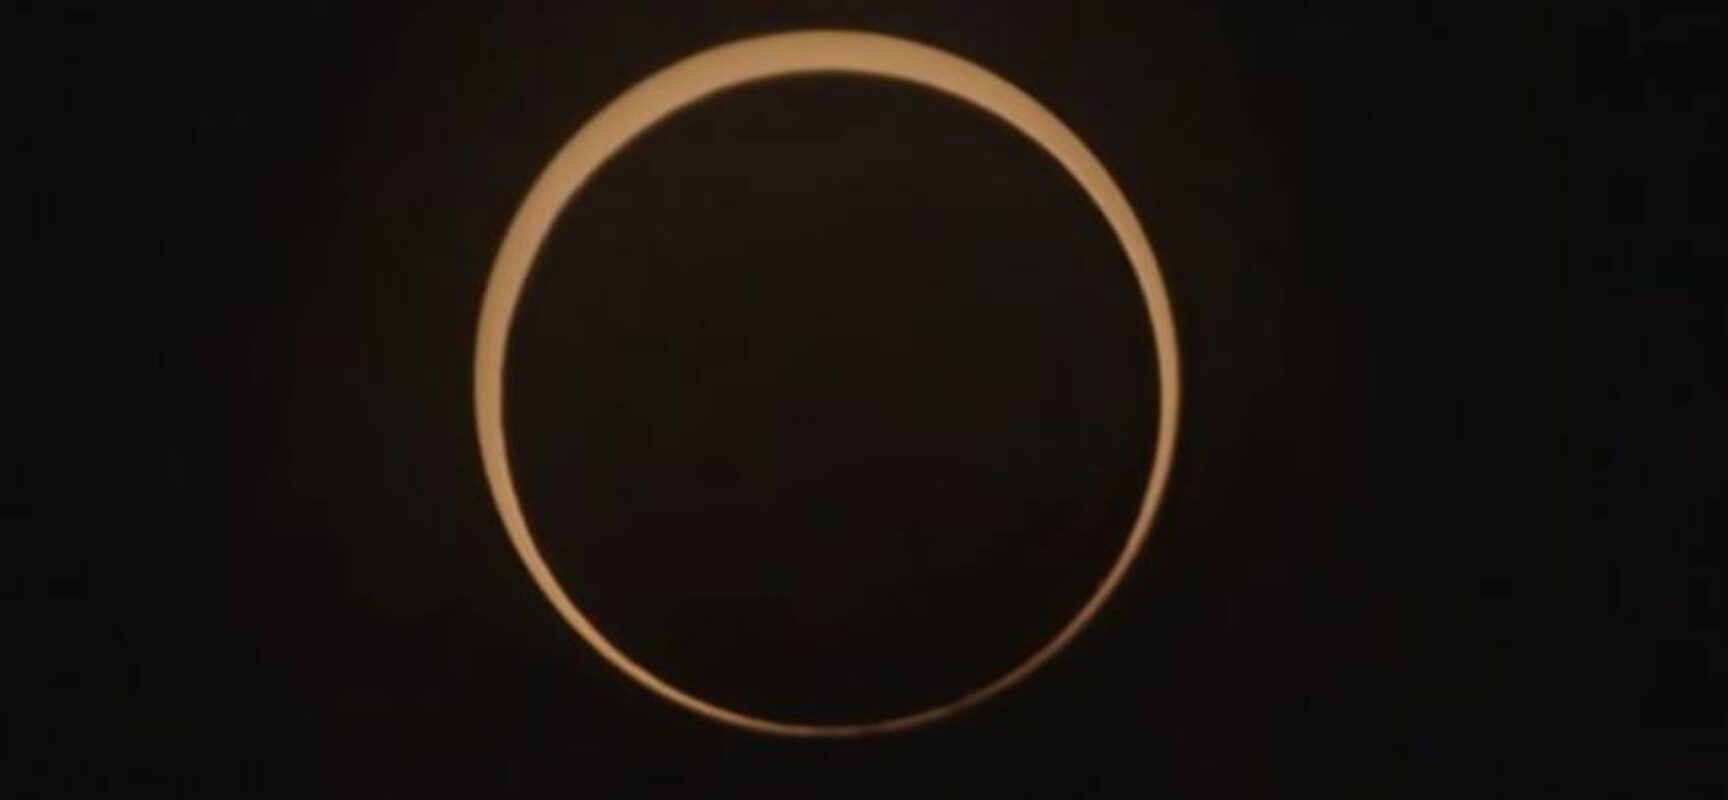 Eclipse anular do Sol é observado no Norte e Nordeste do Brasil